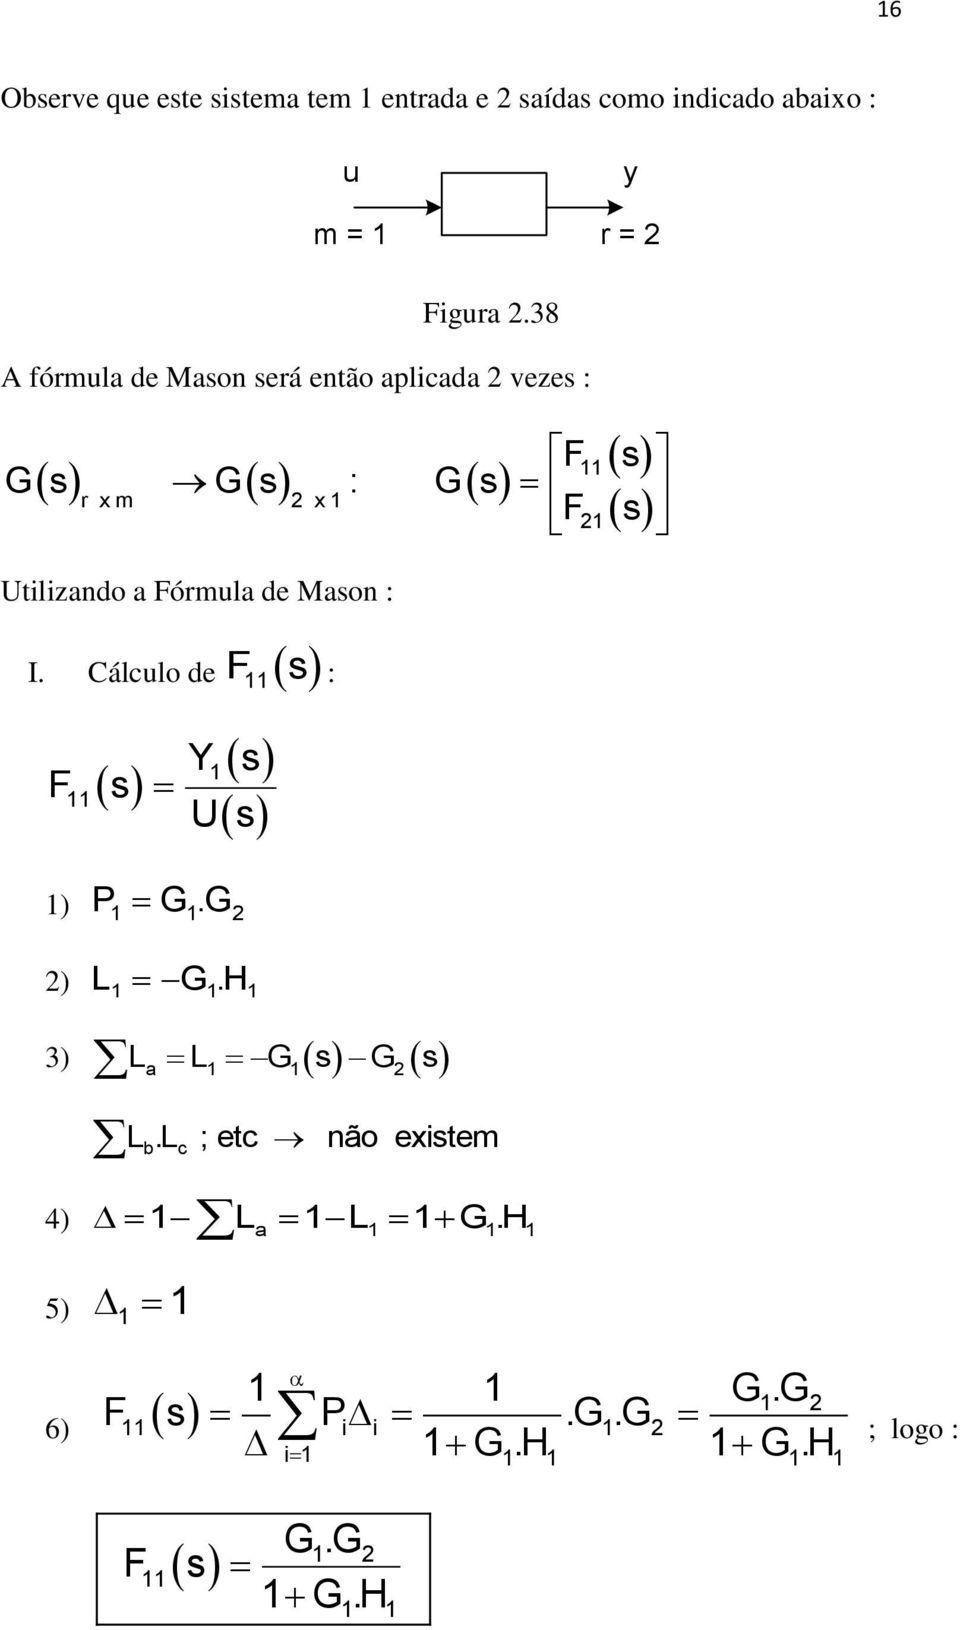 38 fórmula de Mason será então aplicada 2 vezes : s s F s s : s r x m 2 x F2